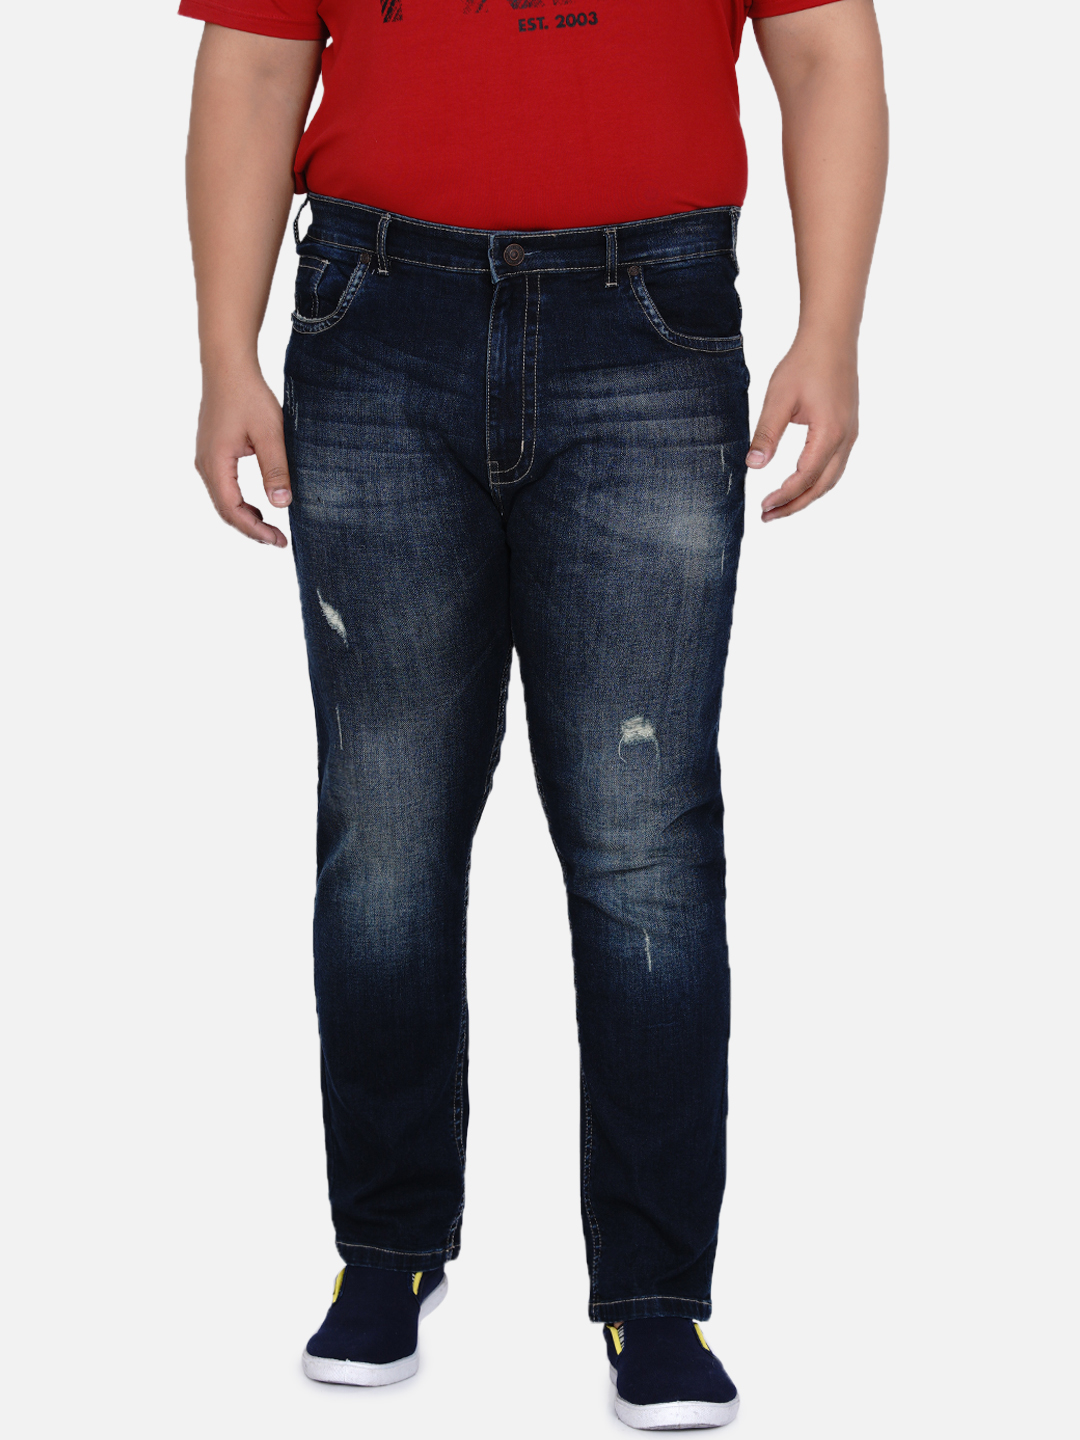 bottomwear/jeans/JPJ12184/jpj12184-3.jpg